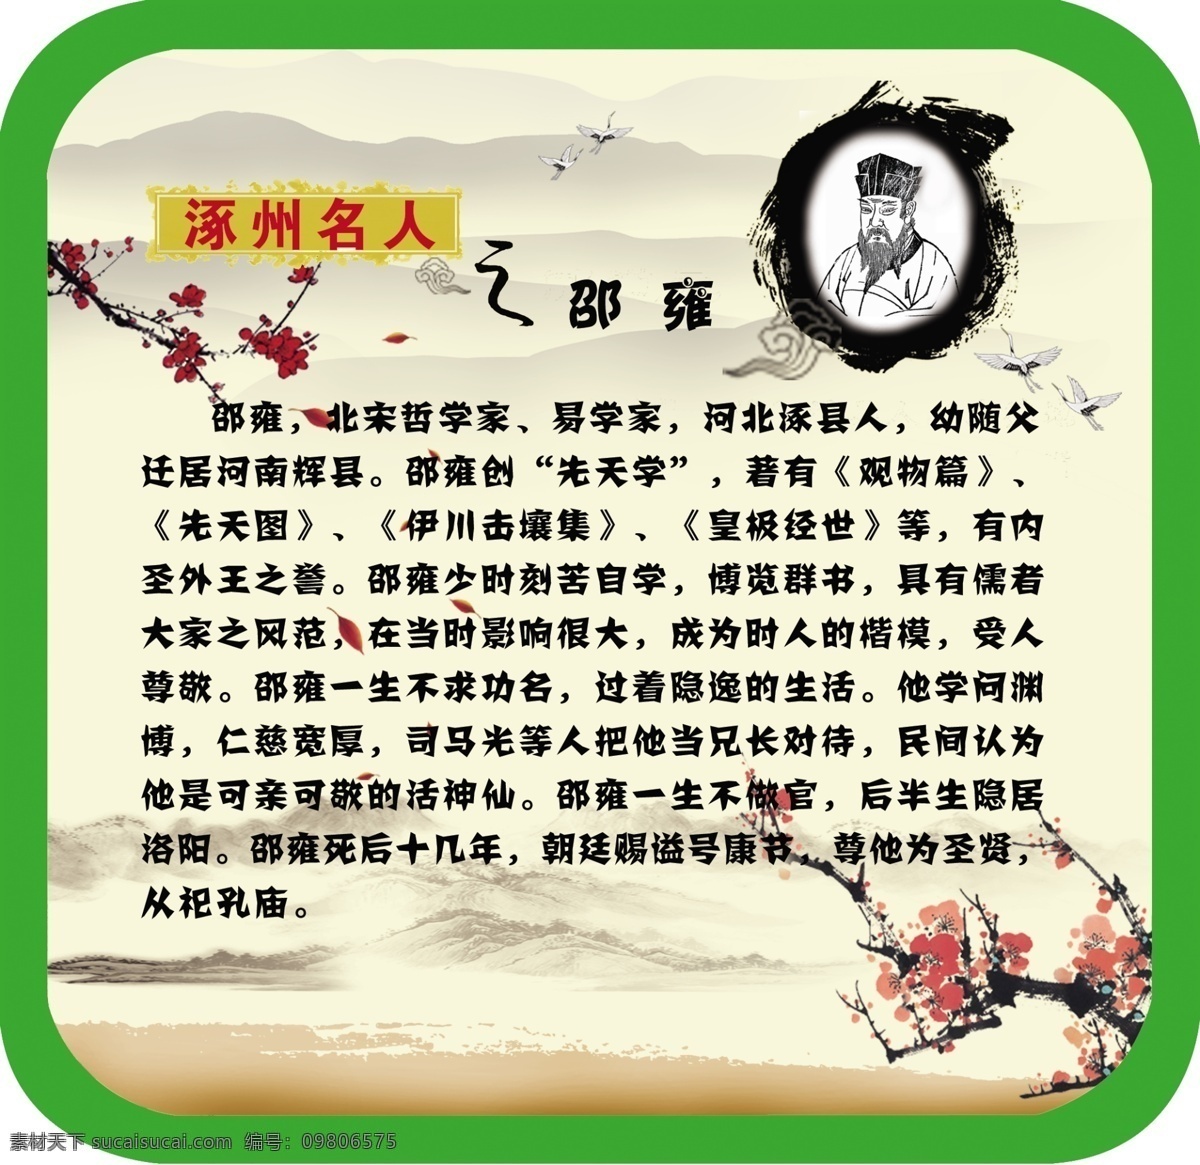 名人 邵 雍 展板 古典 故事 学校展板 展板设计 邵雍 涿州名人 学校展板设计